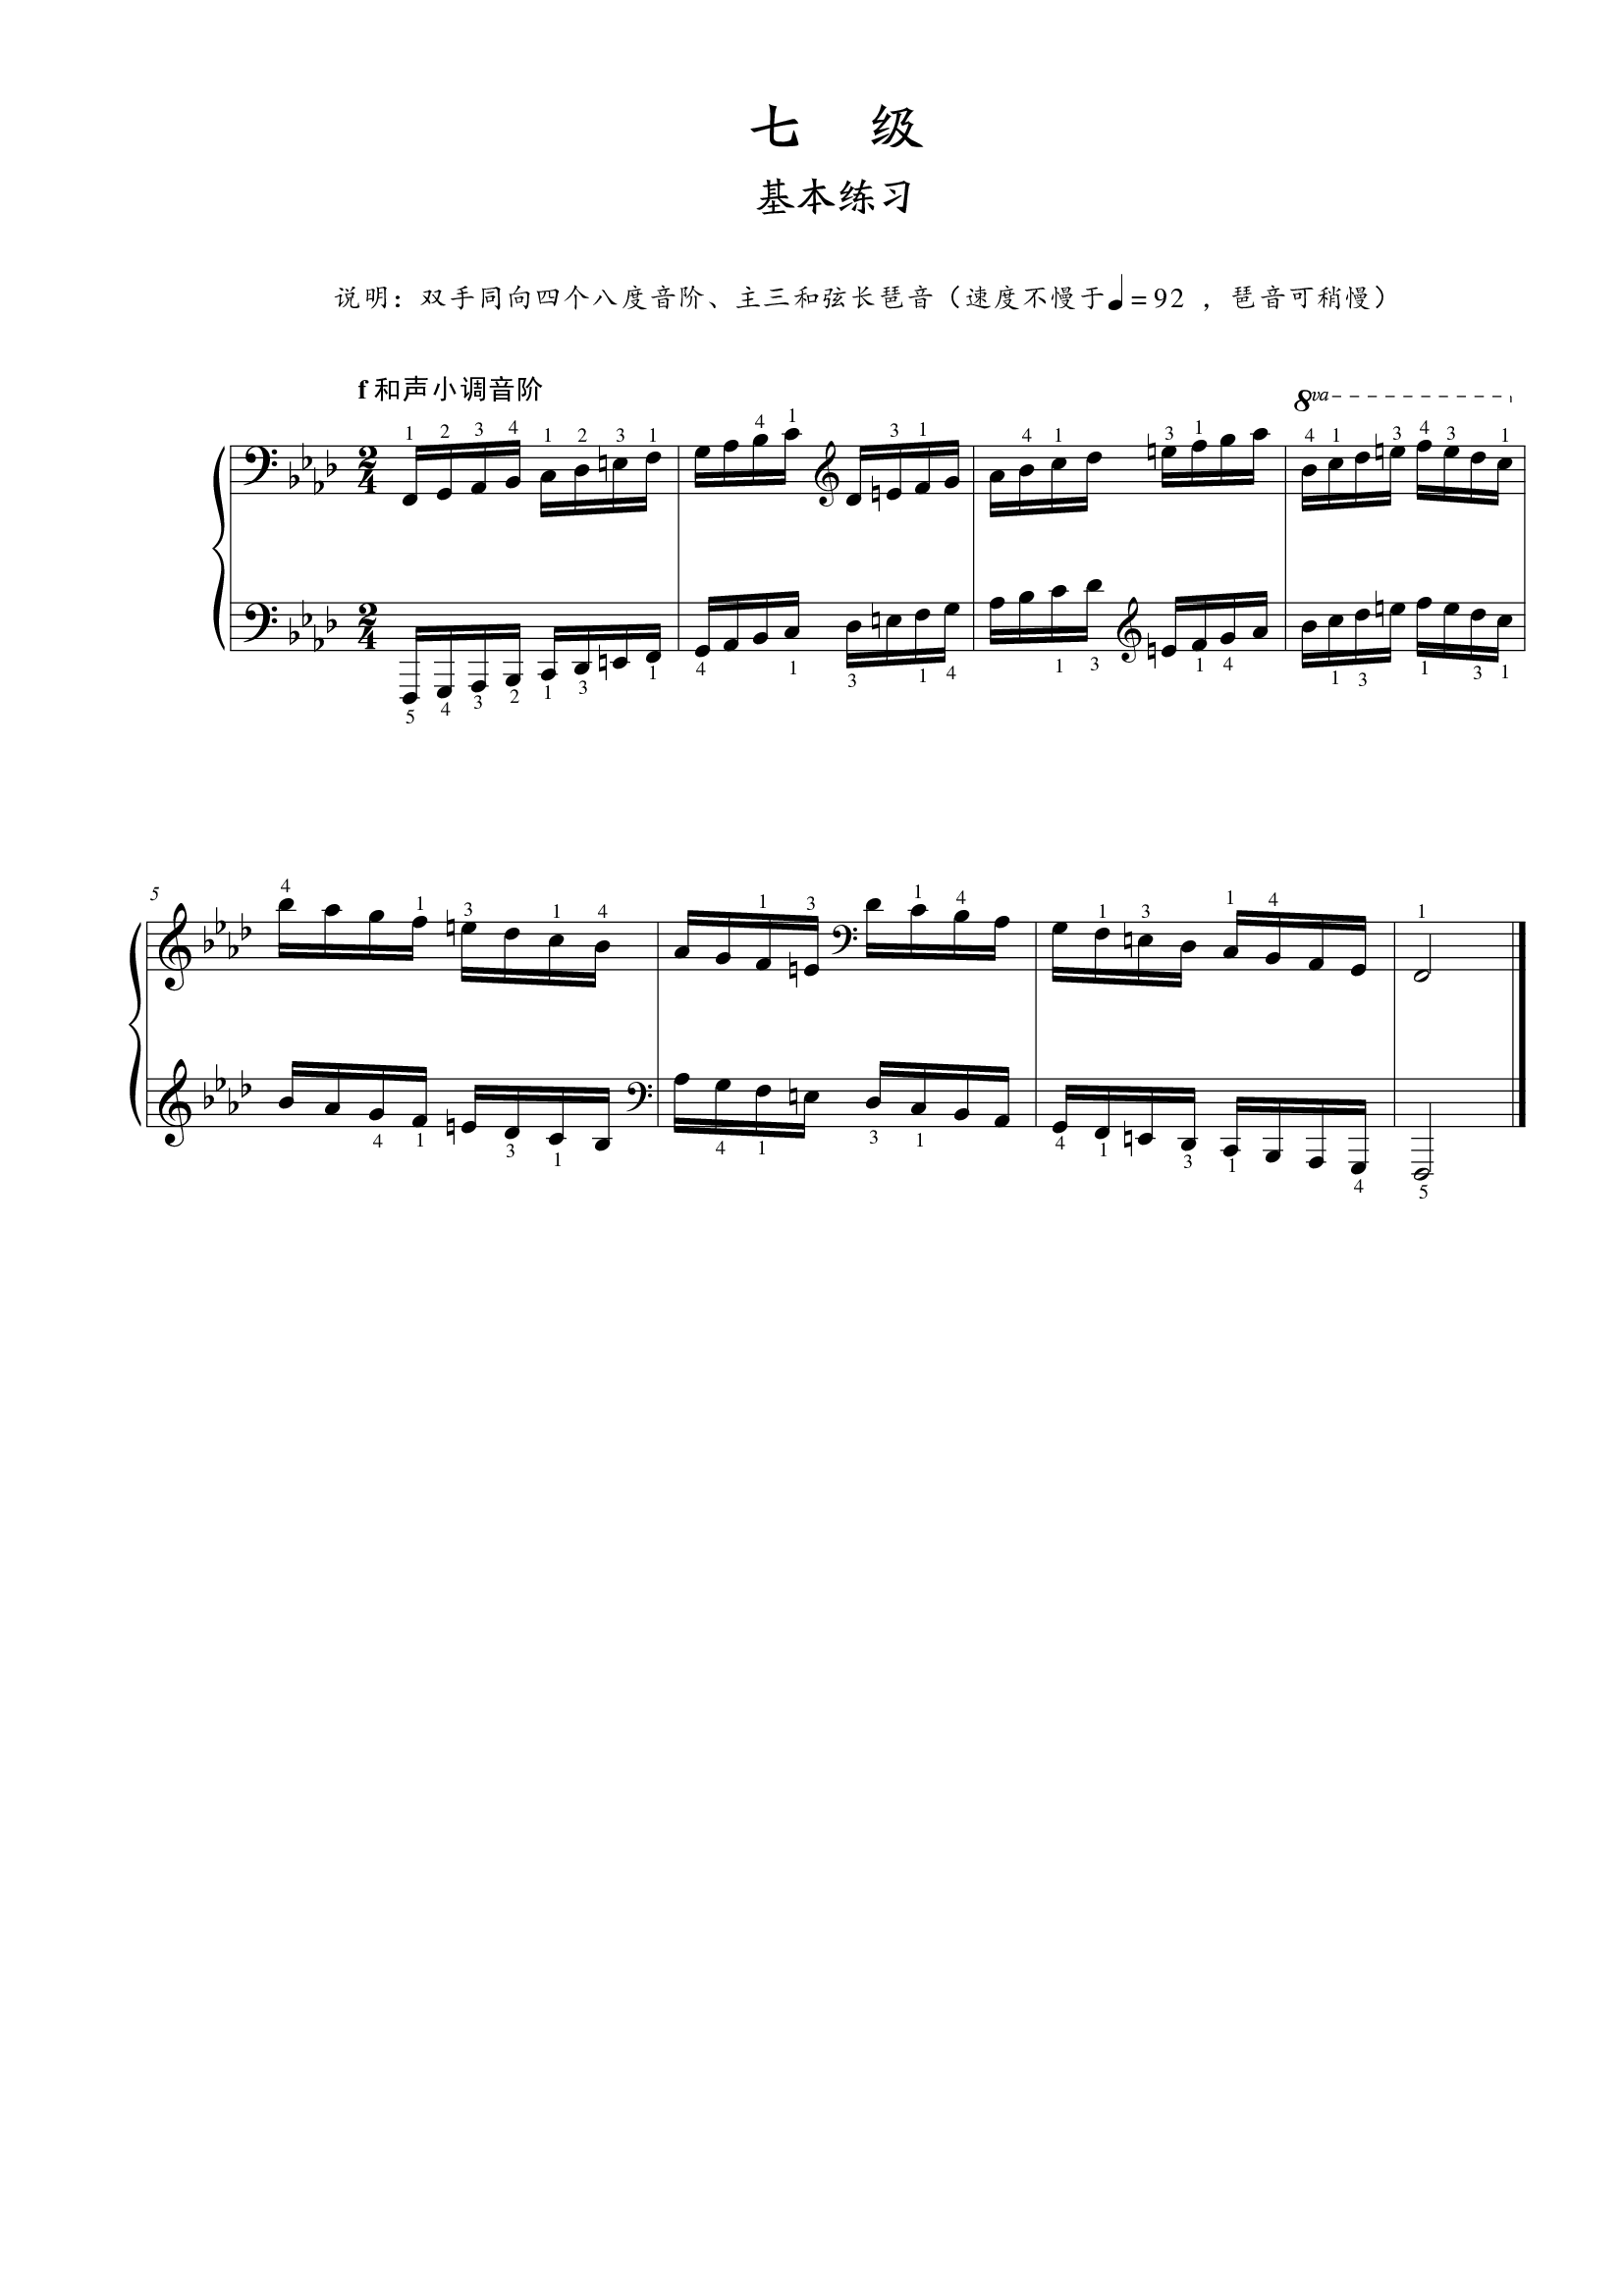 第七级基本练习f和声小调音阶